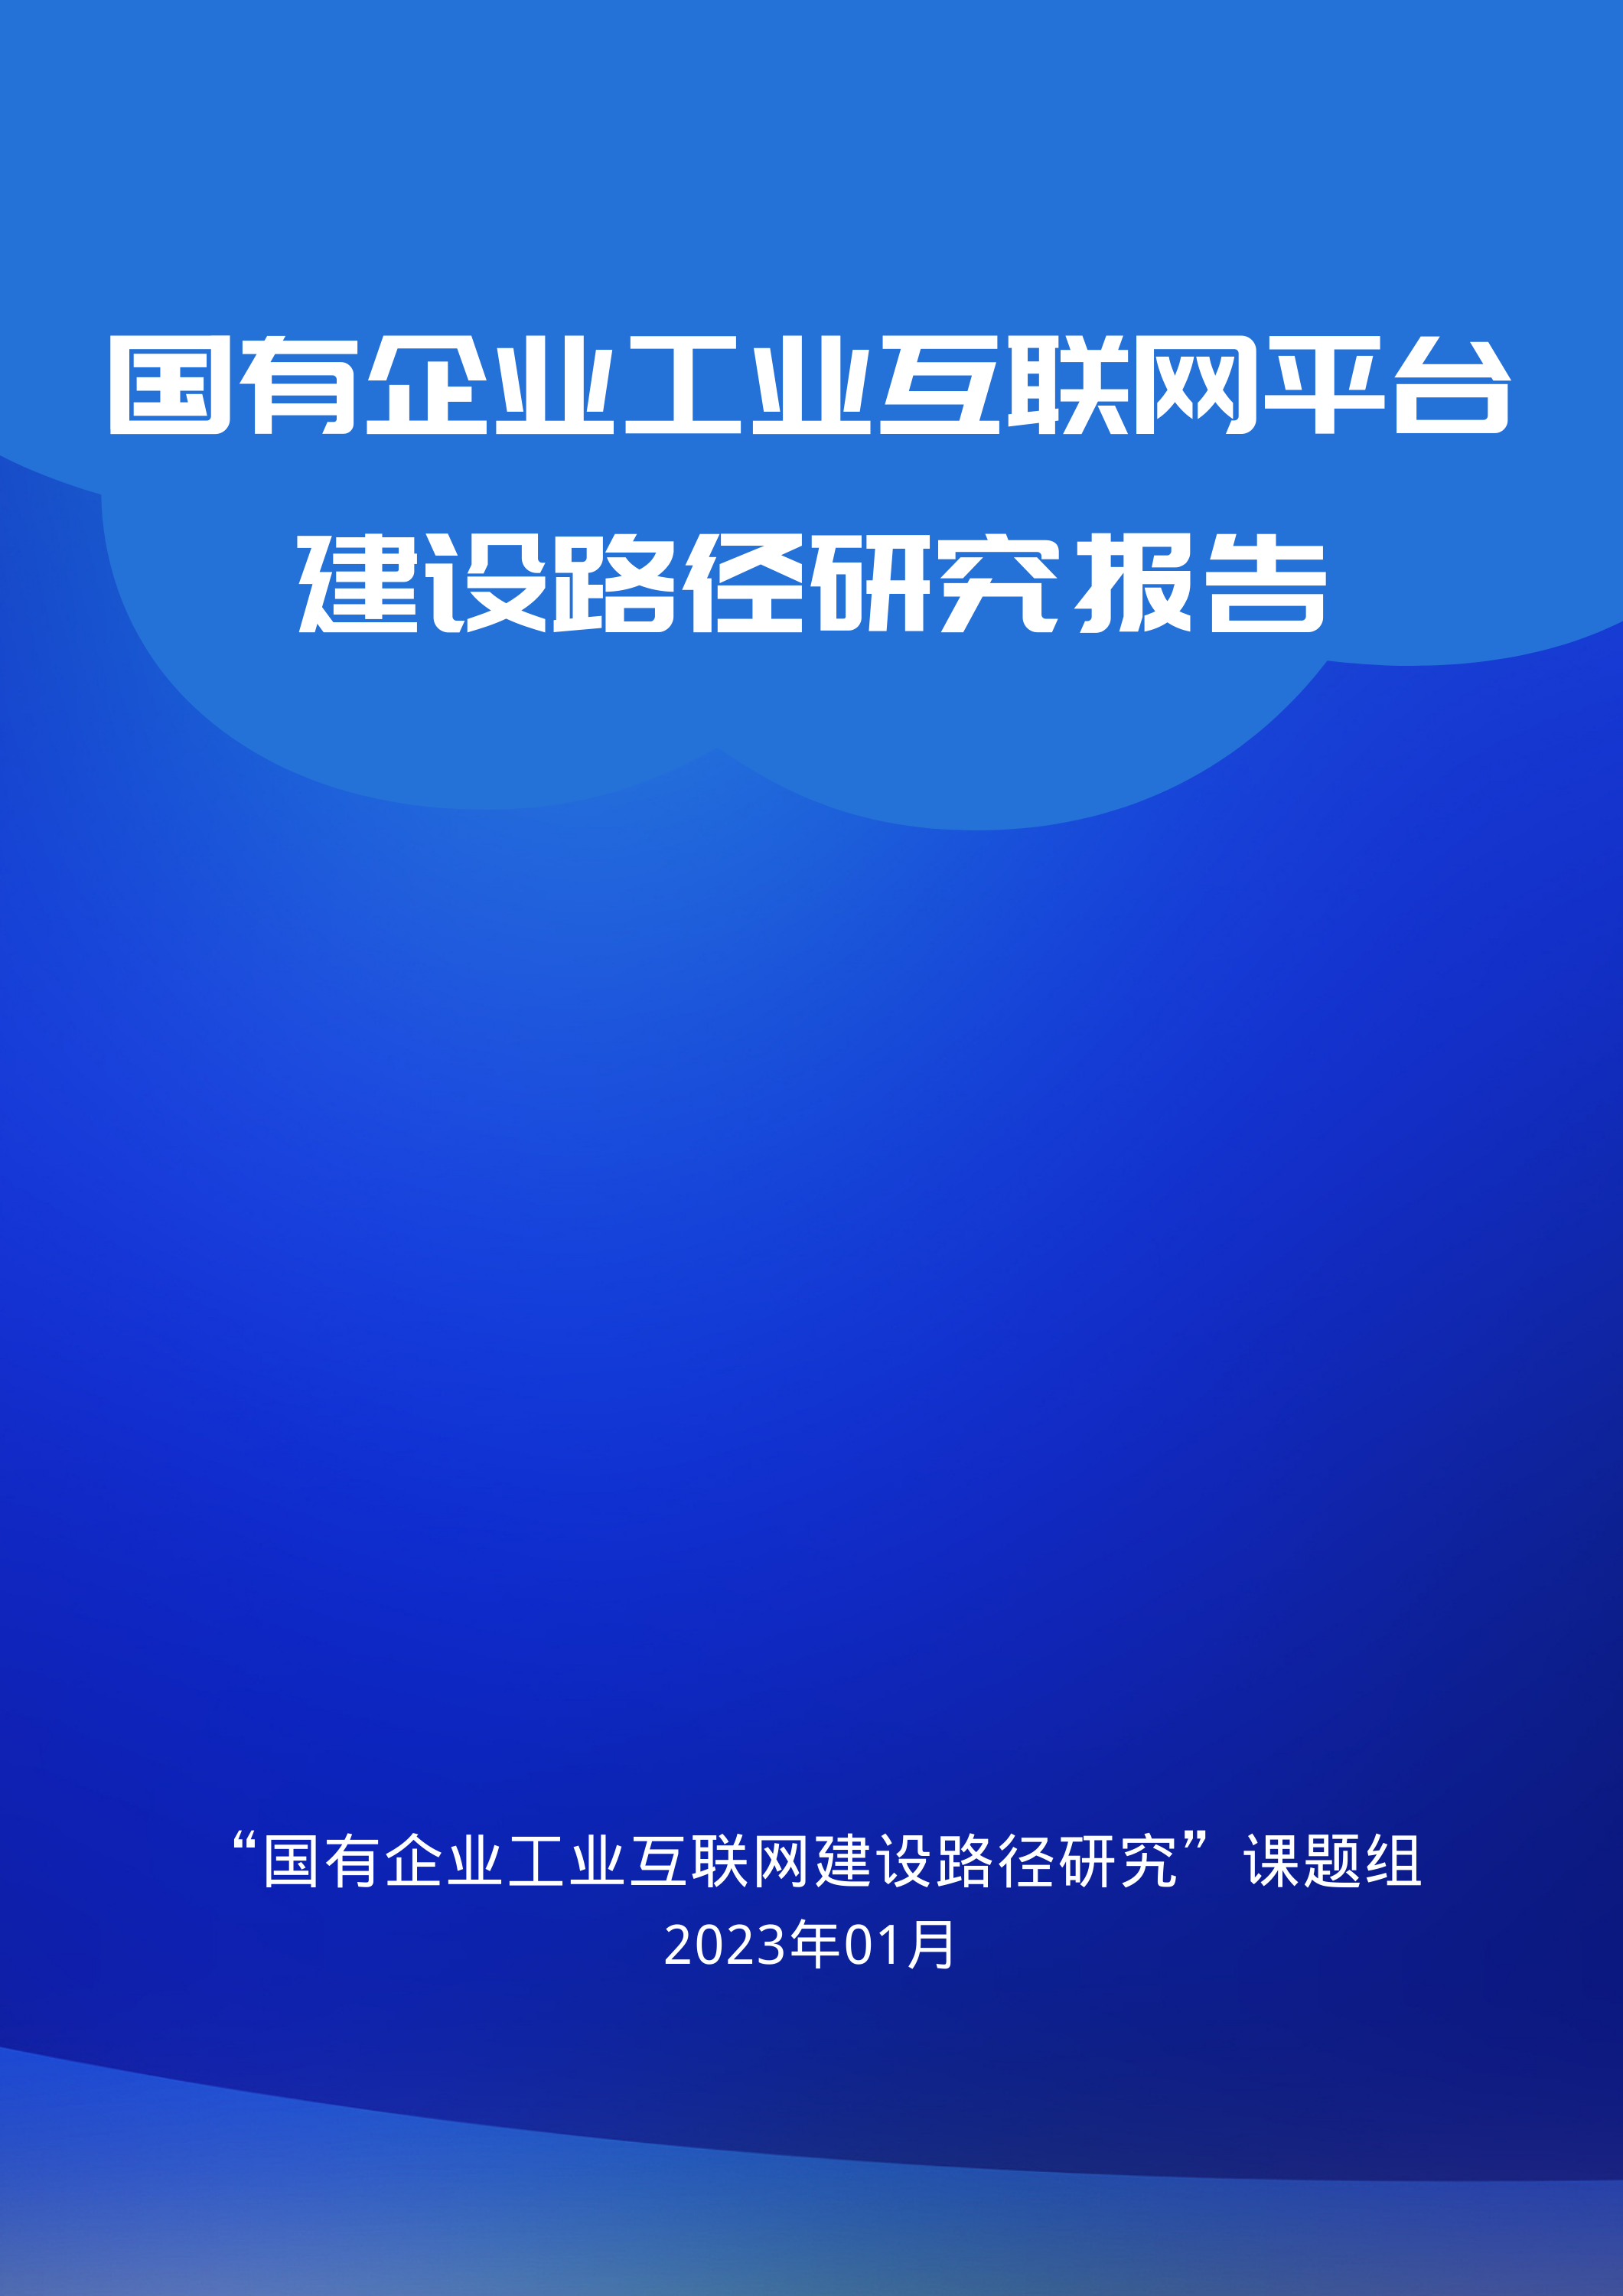 蓝白色行业研究现代互联网分享中文报告（3页） (1).png